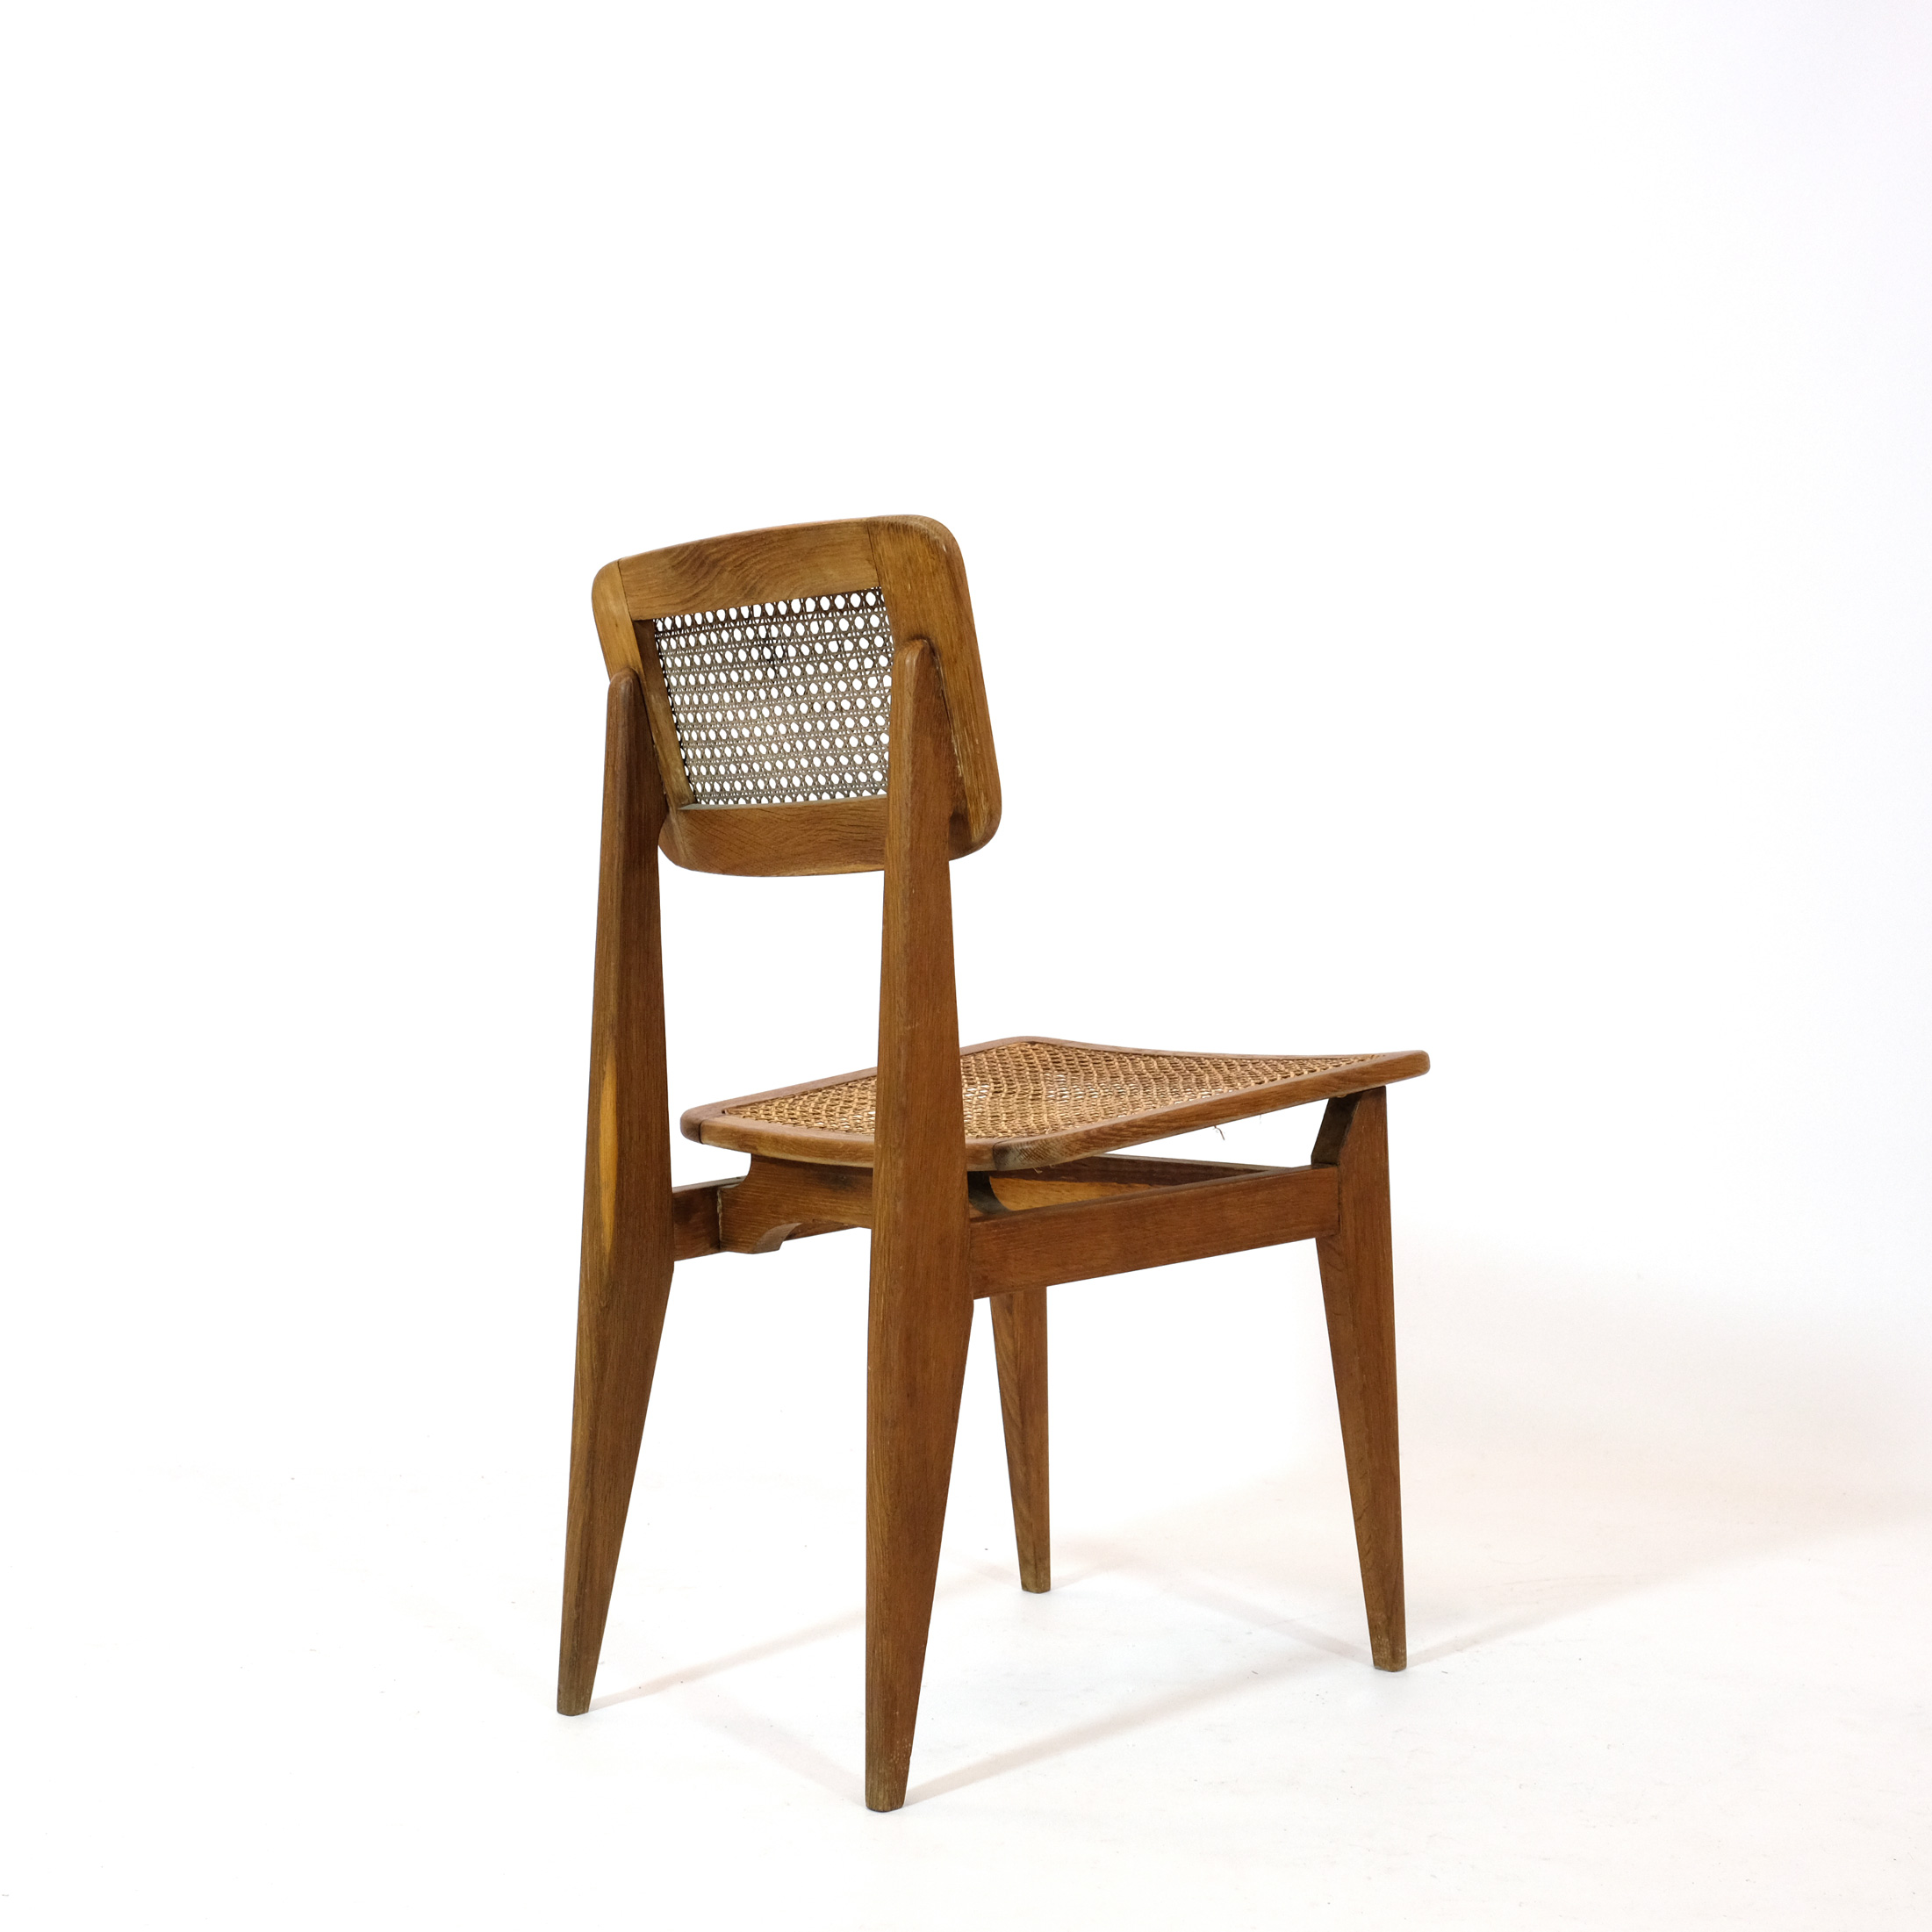 C cane chair, Marcel Gascoin,ARHEC, 1950's.